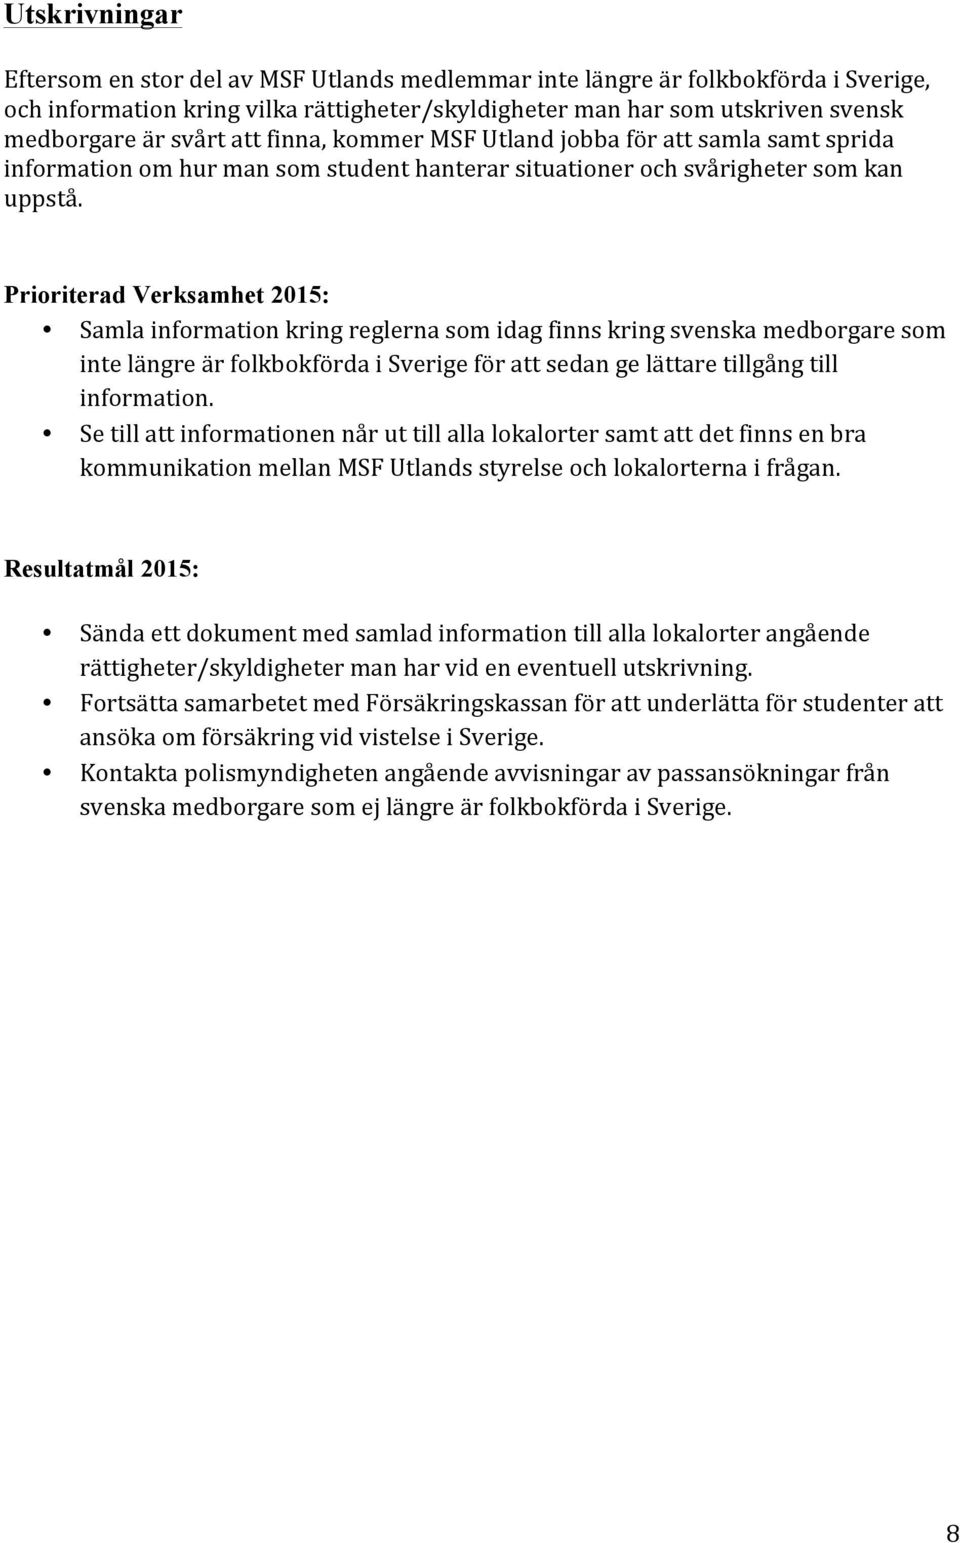 Prioriterad Verksamhet 2015: Samla information kring reglerna som idag finns kring svenska medborgare som inte längre är folkbokförda i Sverige för att sedan ge lättare tillgång till information.